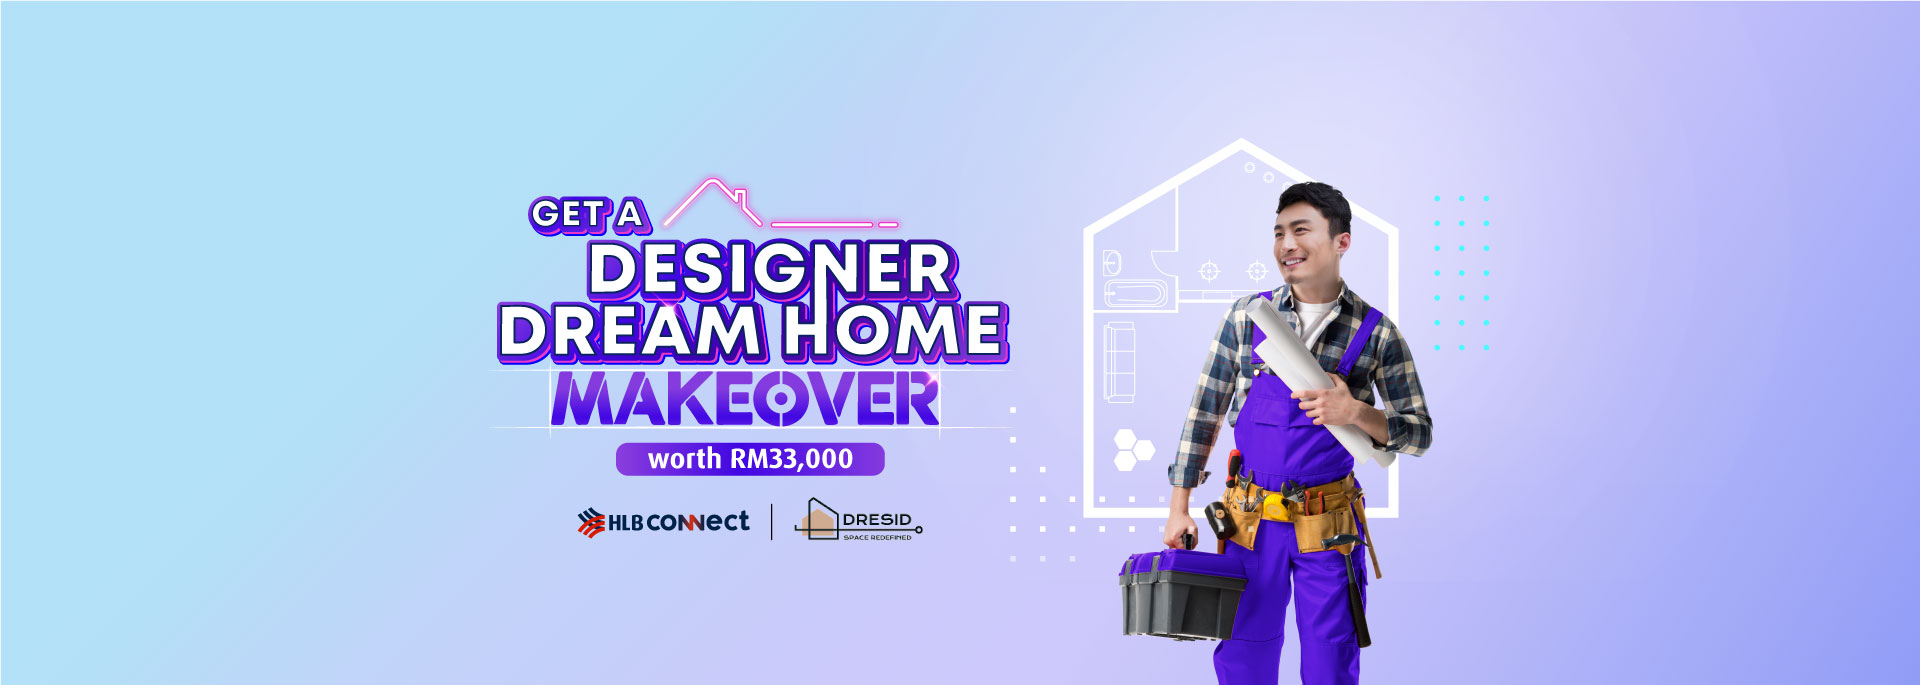 Get a Designer Dream Home Makeover worth RM33,000